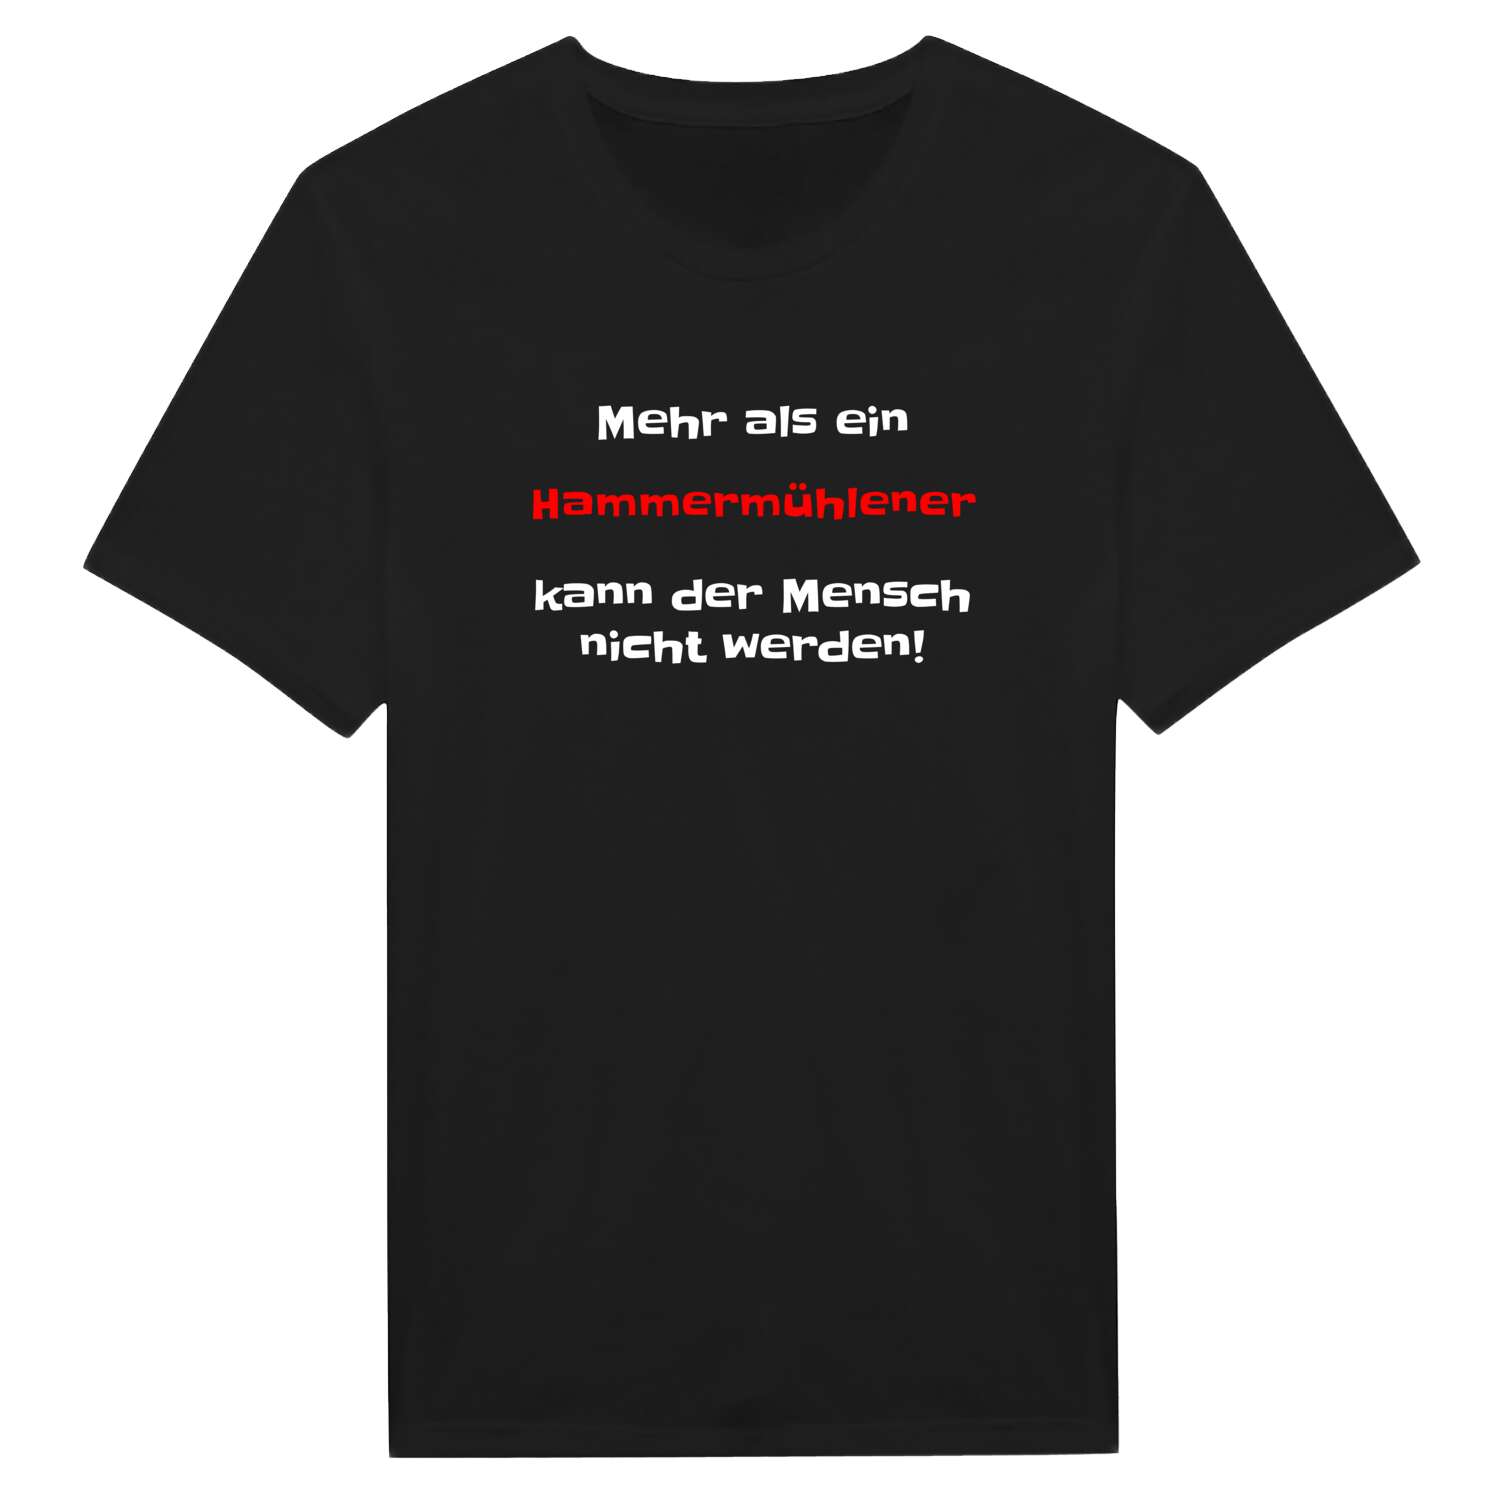 Hammermühle T-Shirt »Mehr als ein«